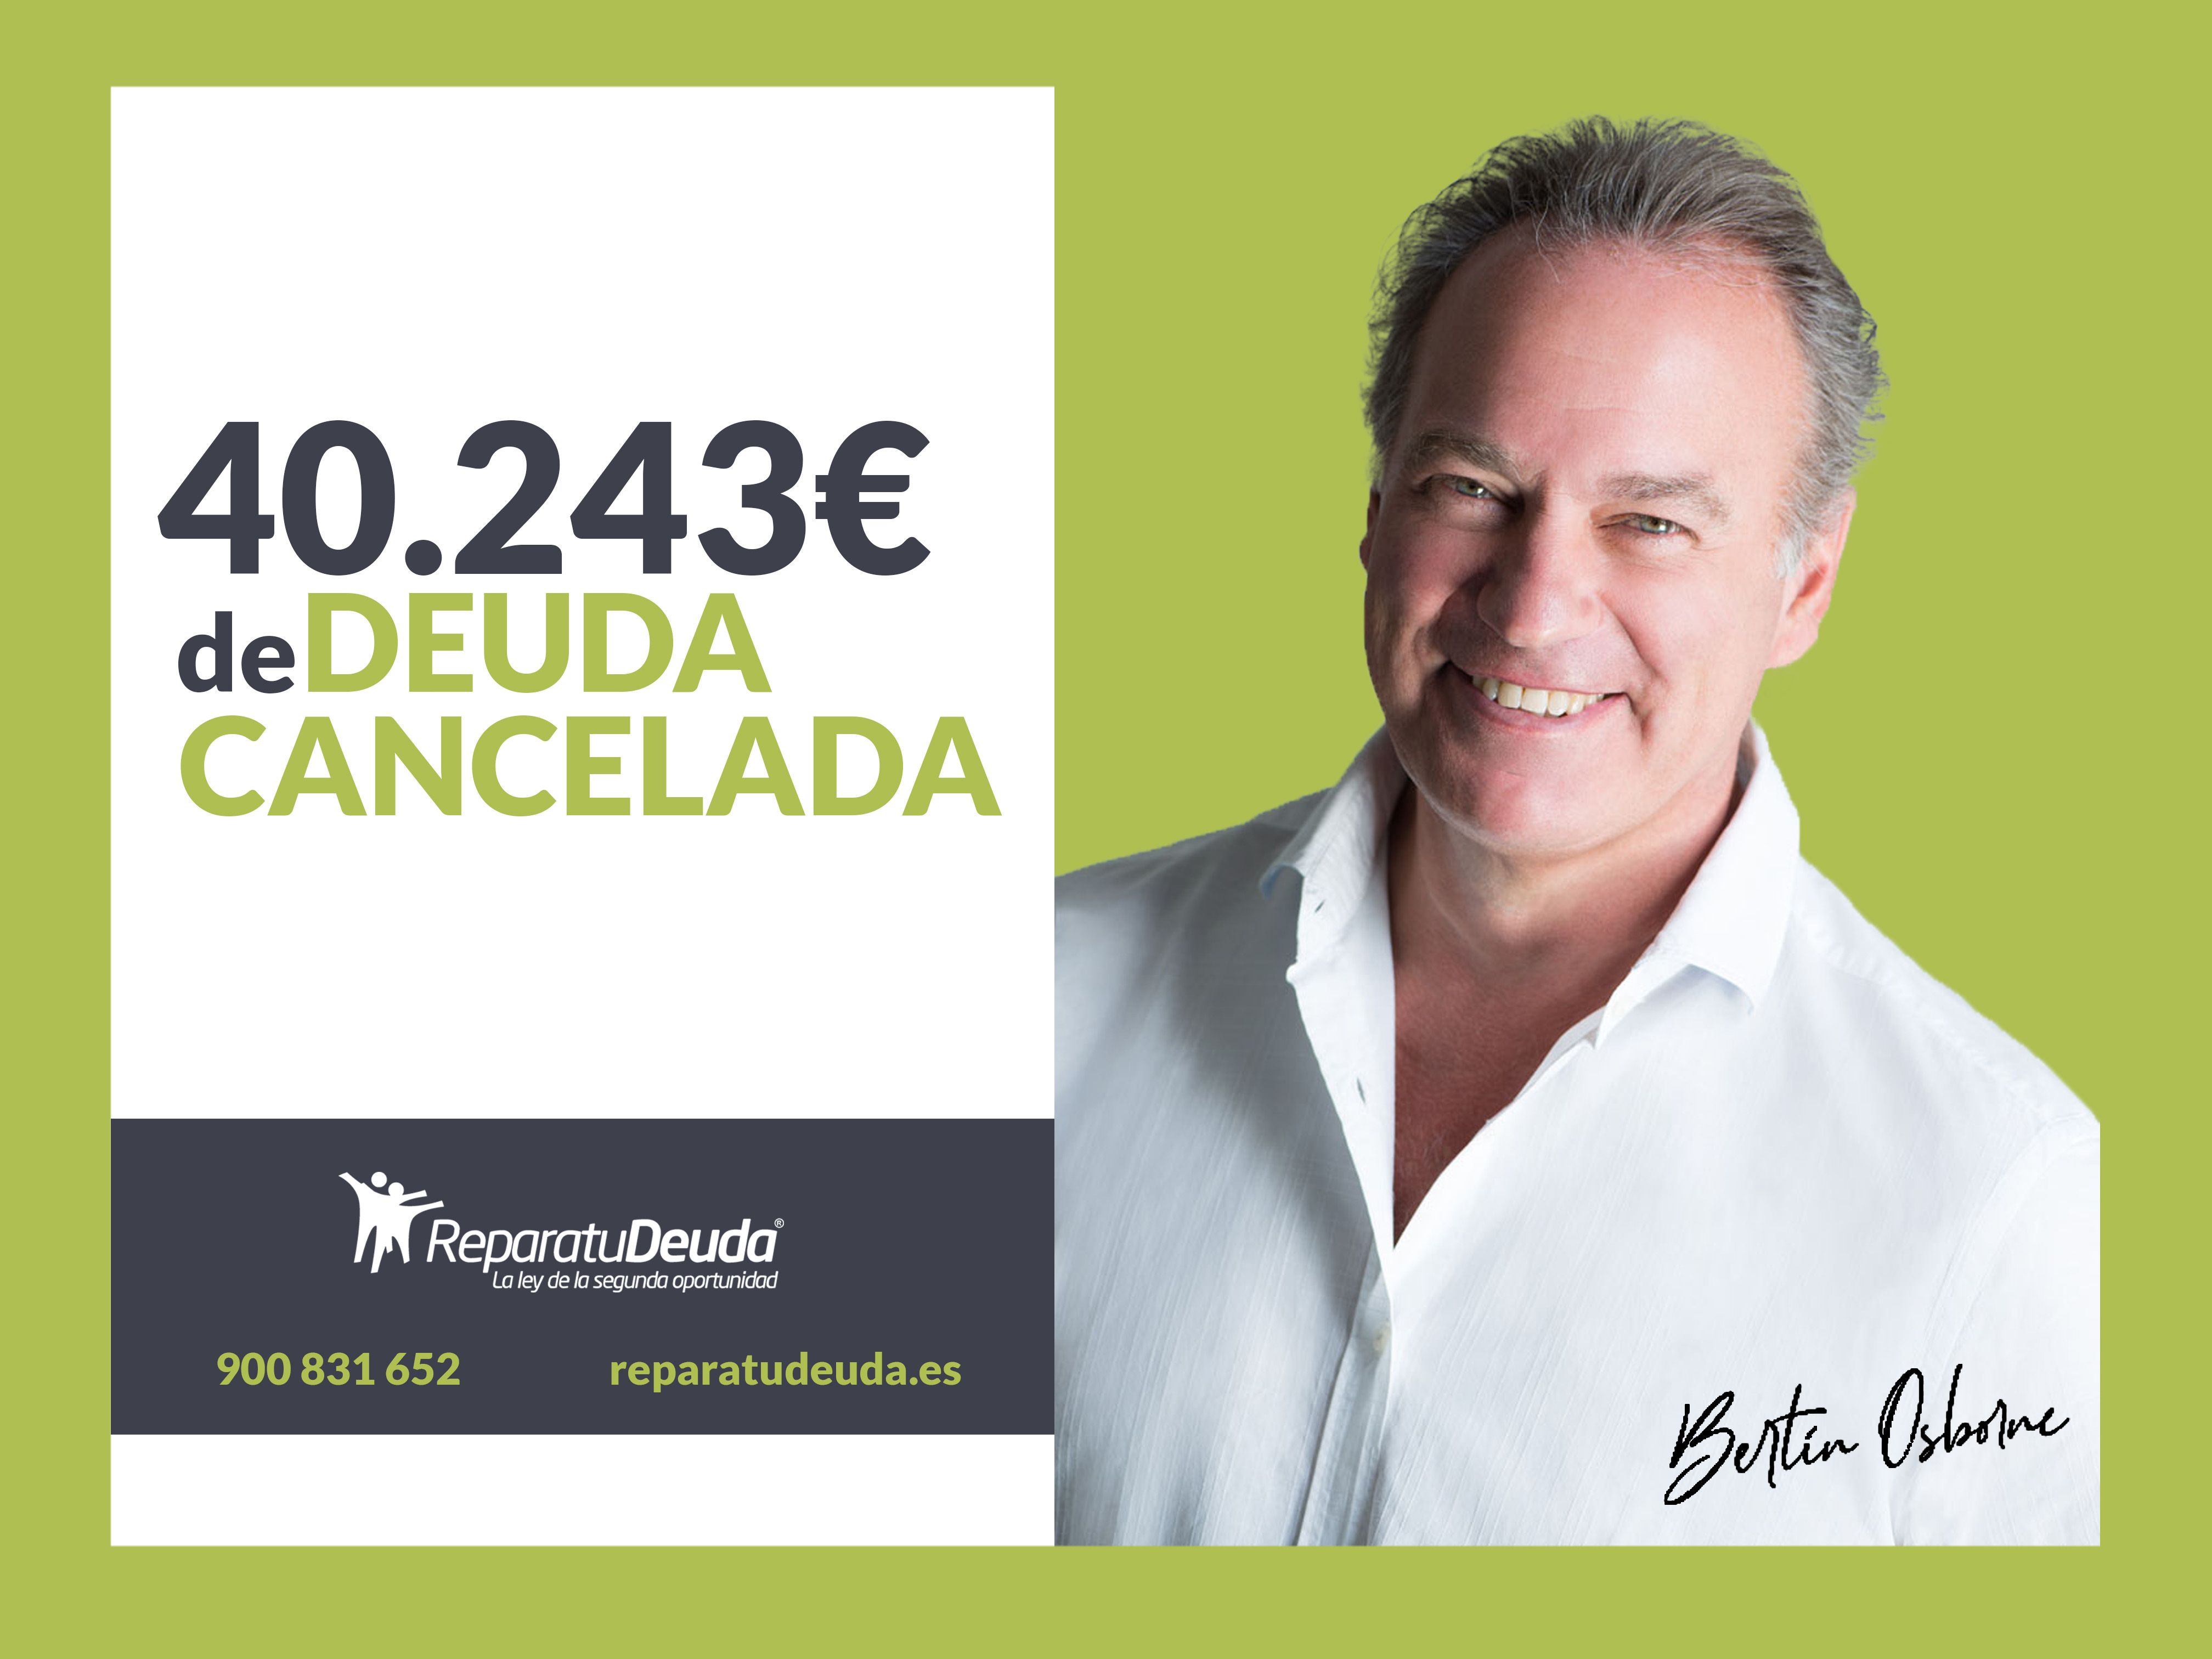 Repara tu Deuda cancela una deuda de 40.243 ? en Granollers (Barcelona) con la Ley de Segunda Oportunidad 